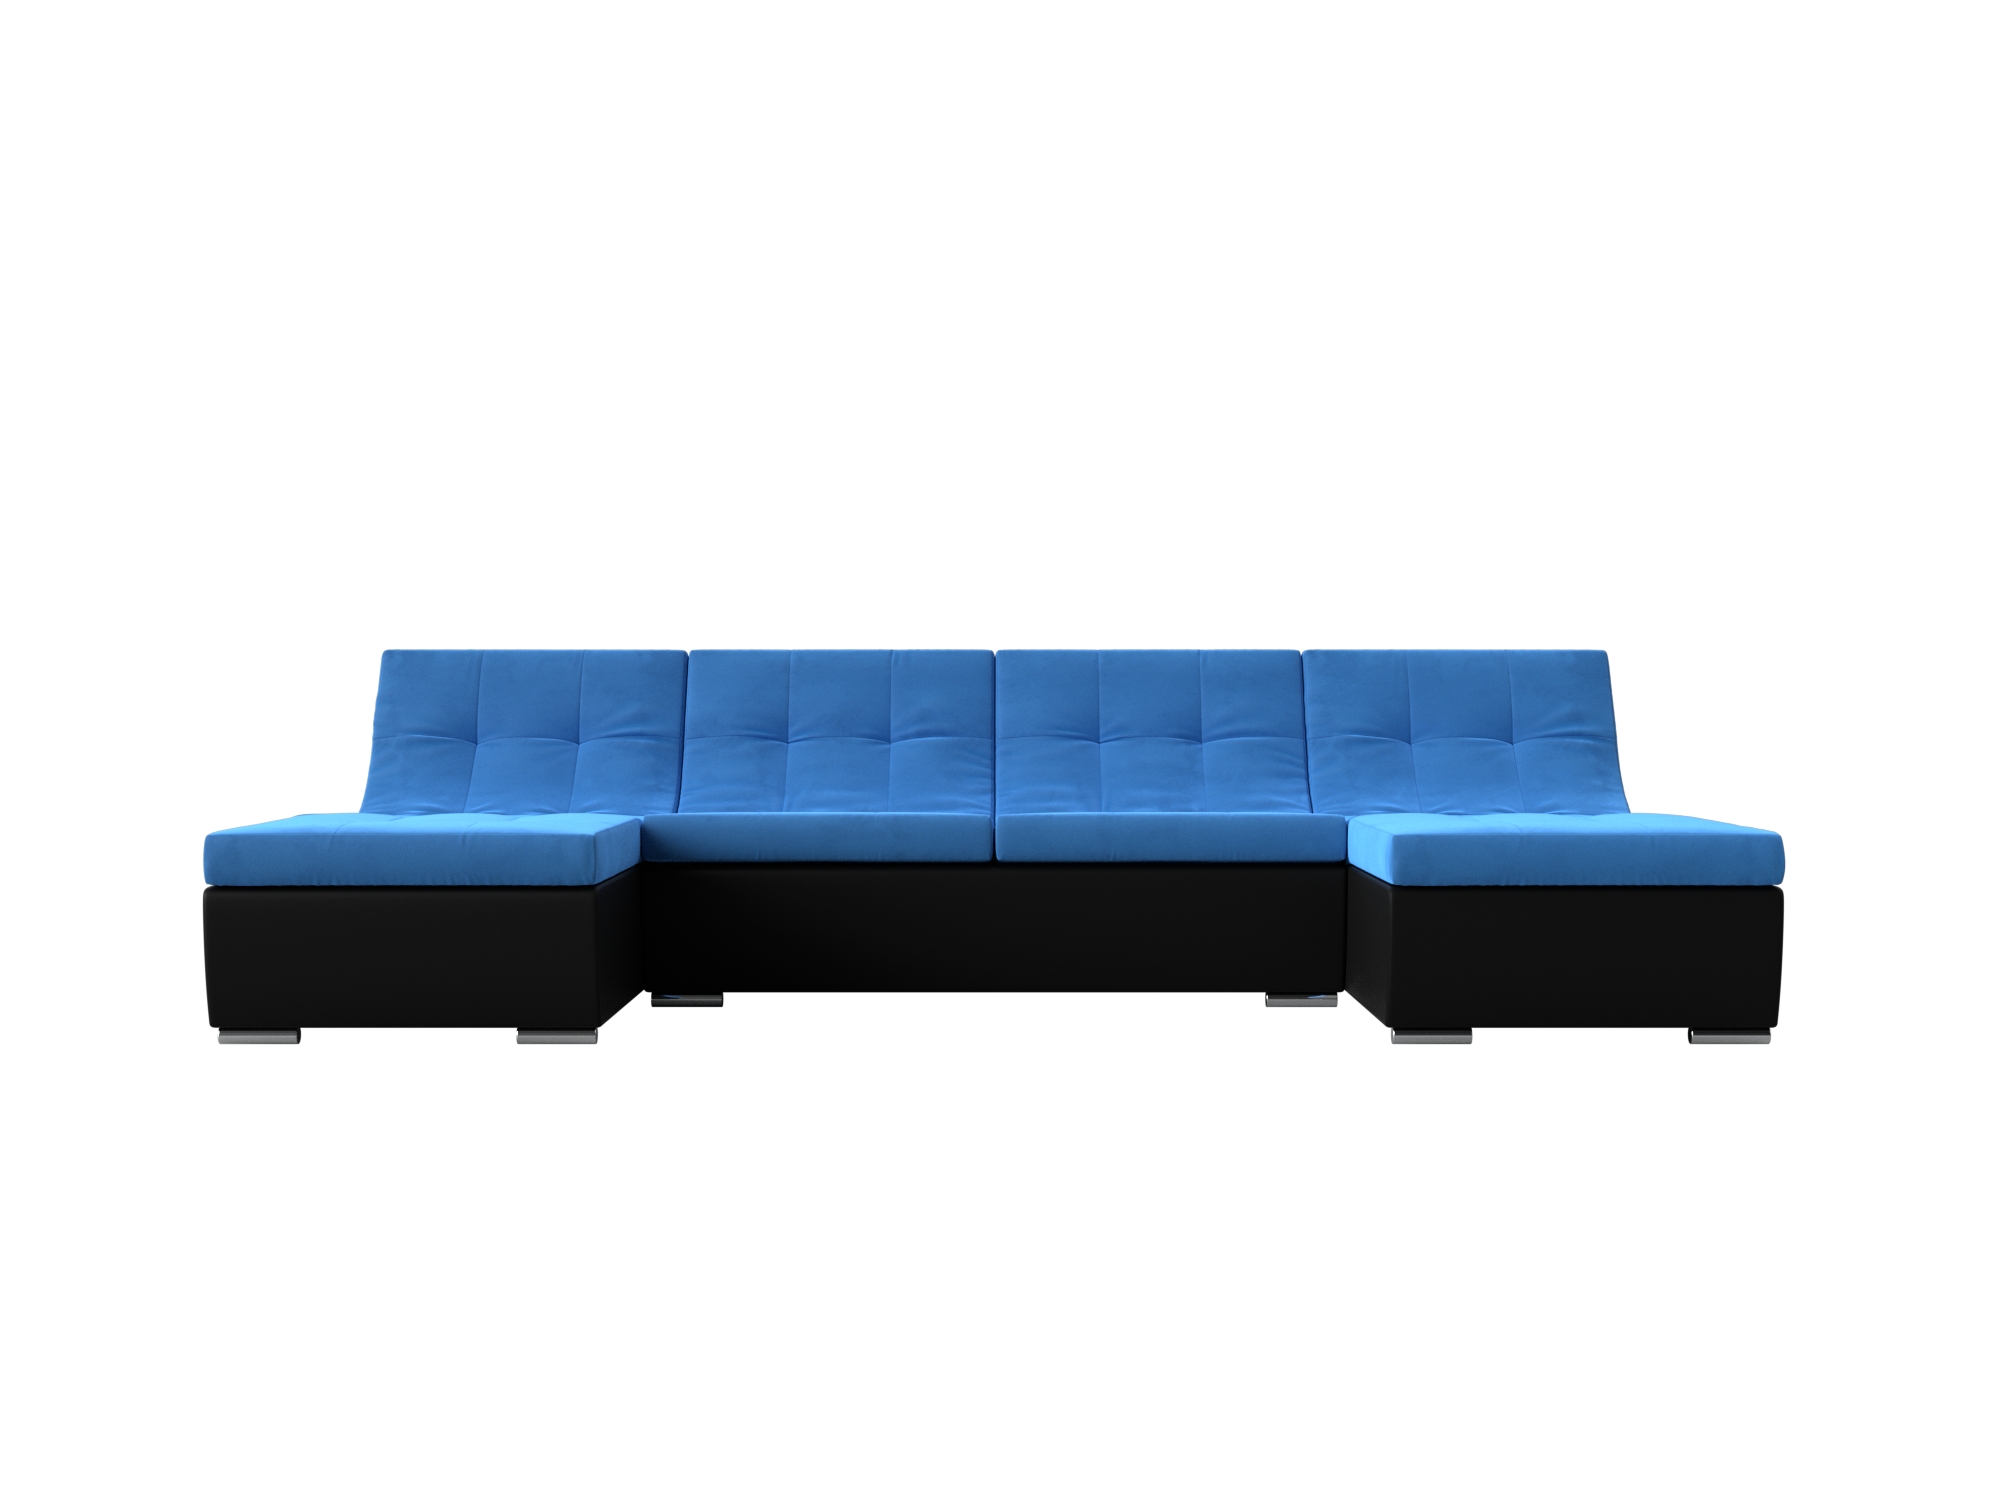 П-образный модульный диван Монреаль MebelVia Голубой, Черный, Велюр, Экокожа, ЛДСП диван п образный честер mebelvia черный голубой велюр лдсп